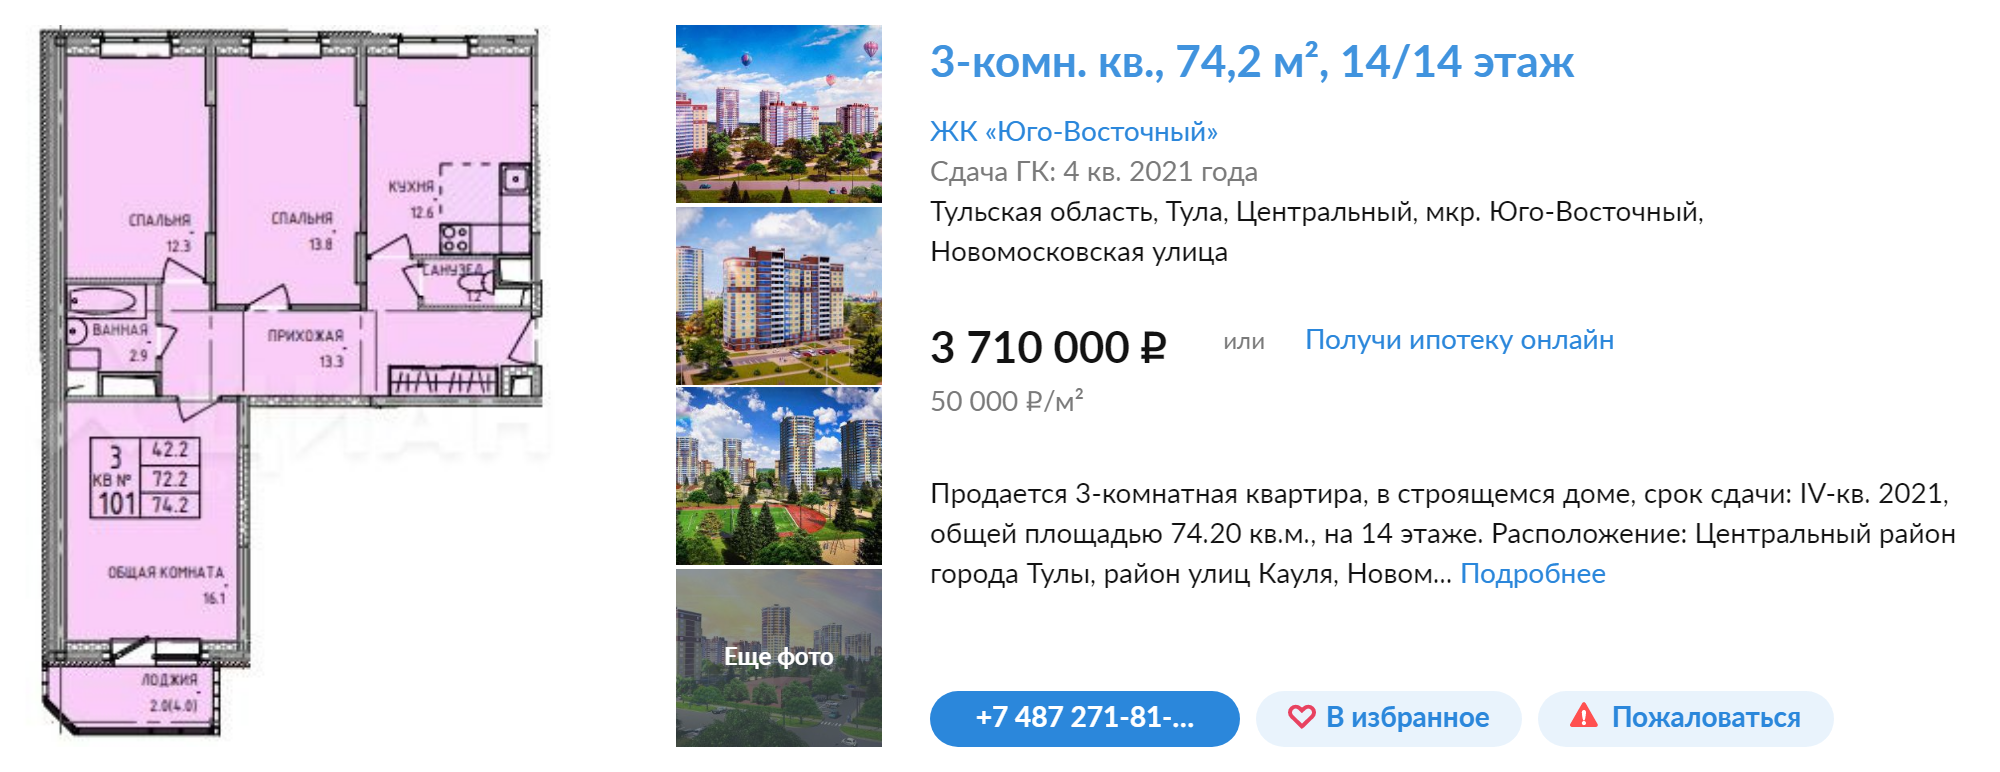 Жилье экономкласса в строящемся доме стоит чуть больше 3,7 млн рублей, до центра от этой новостройки ехать минут 10 без пробок